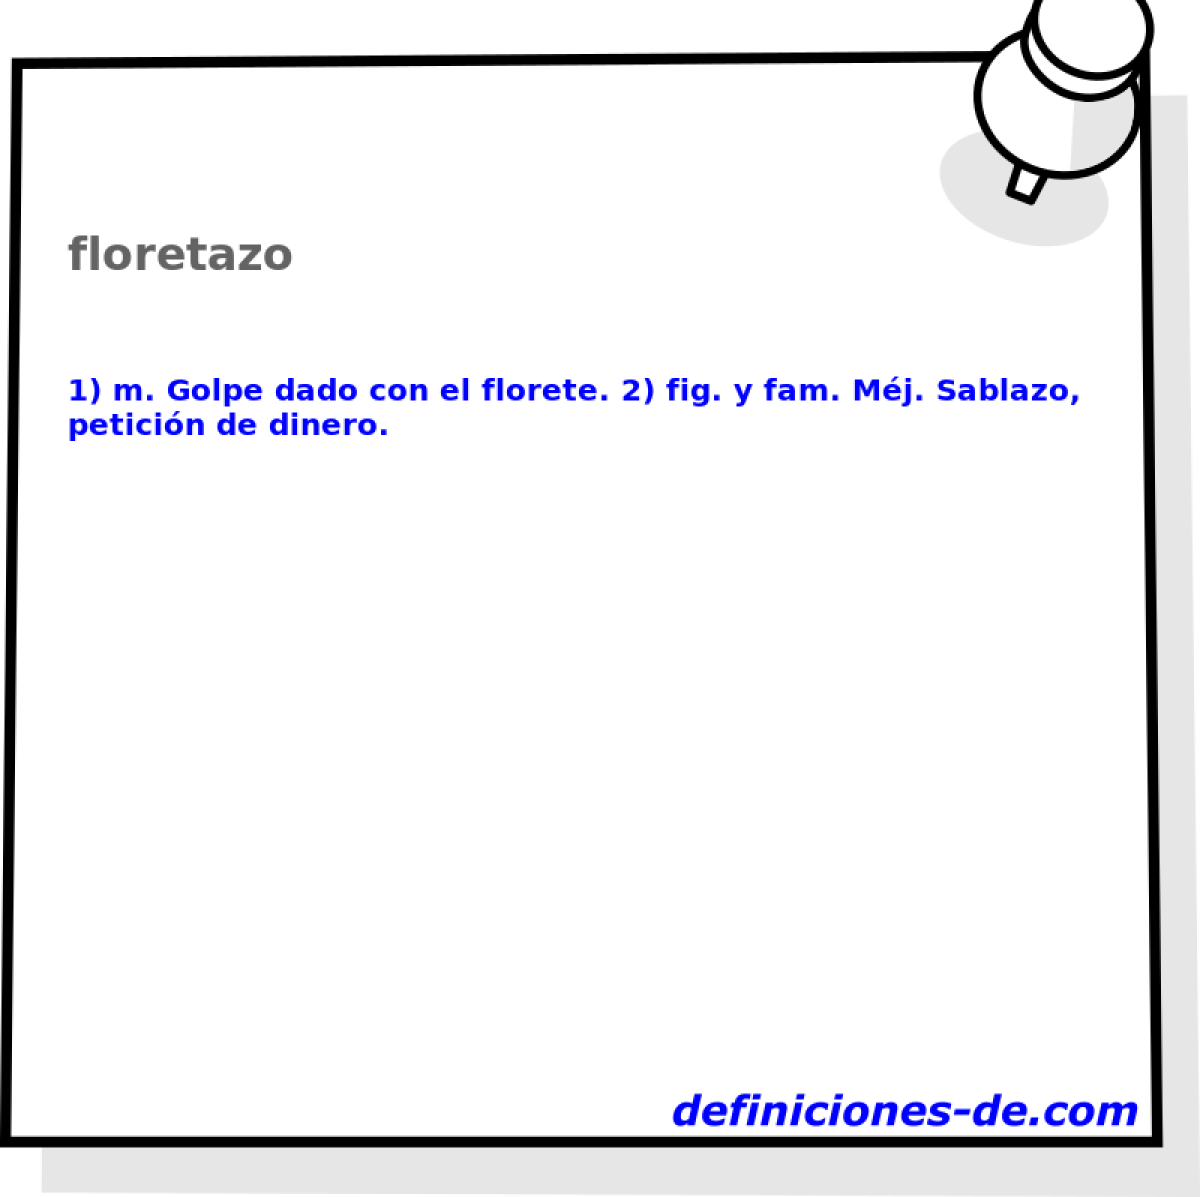 floretazo 